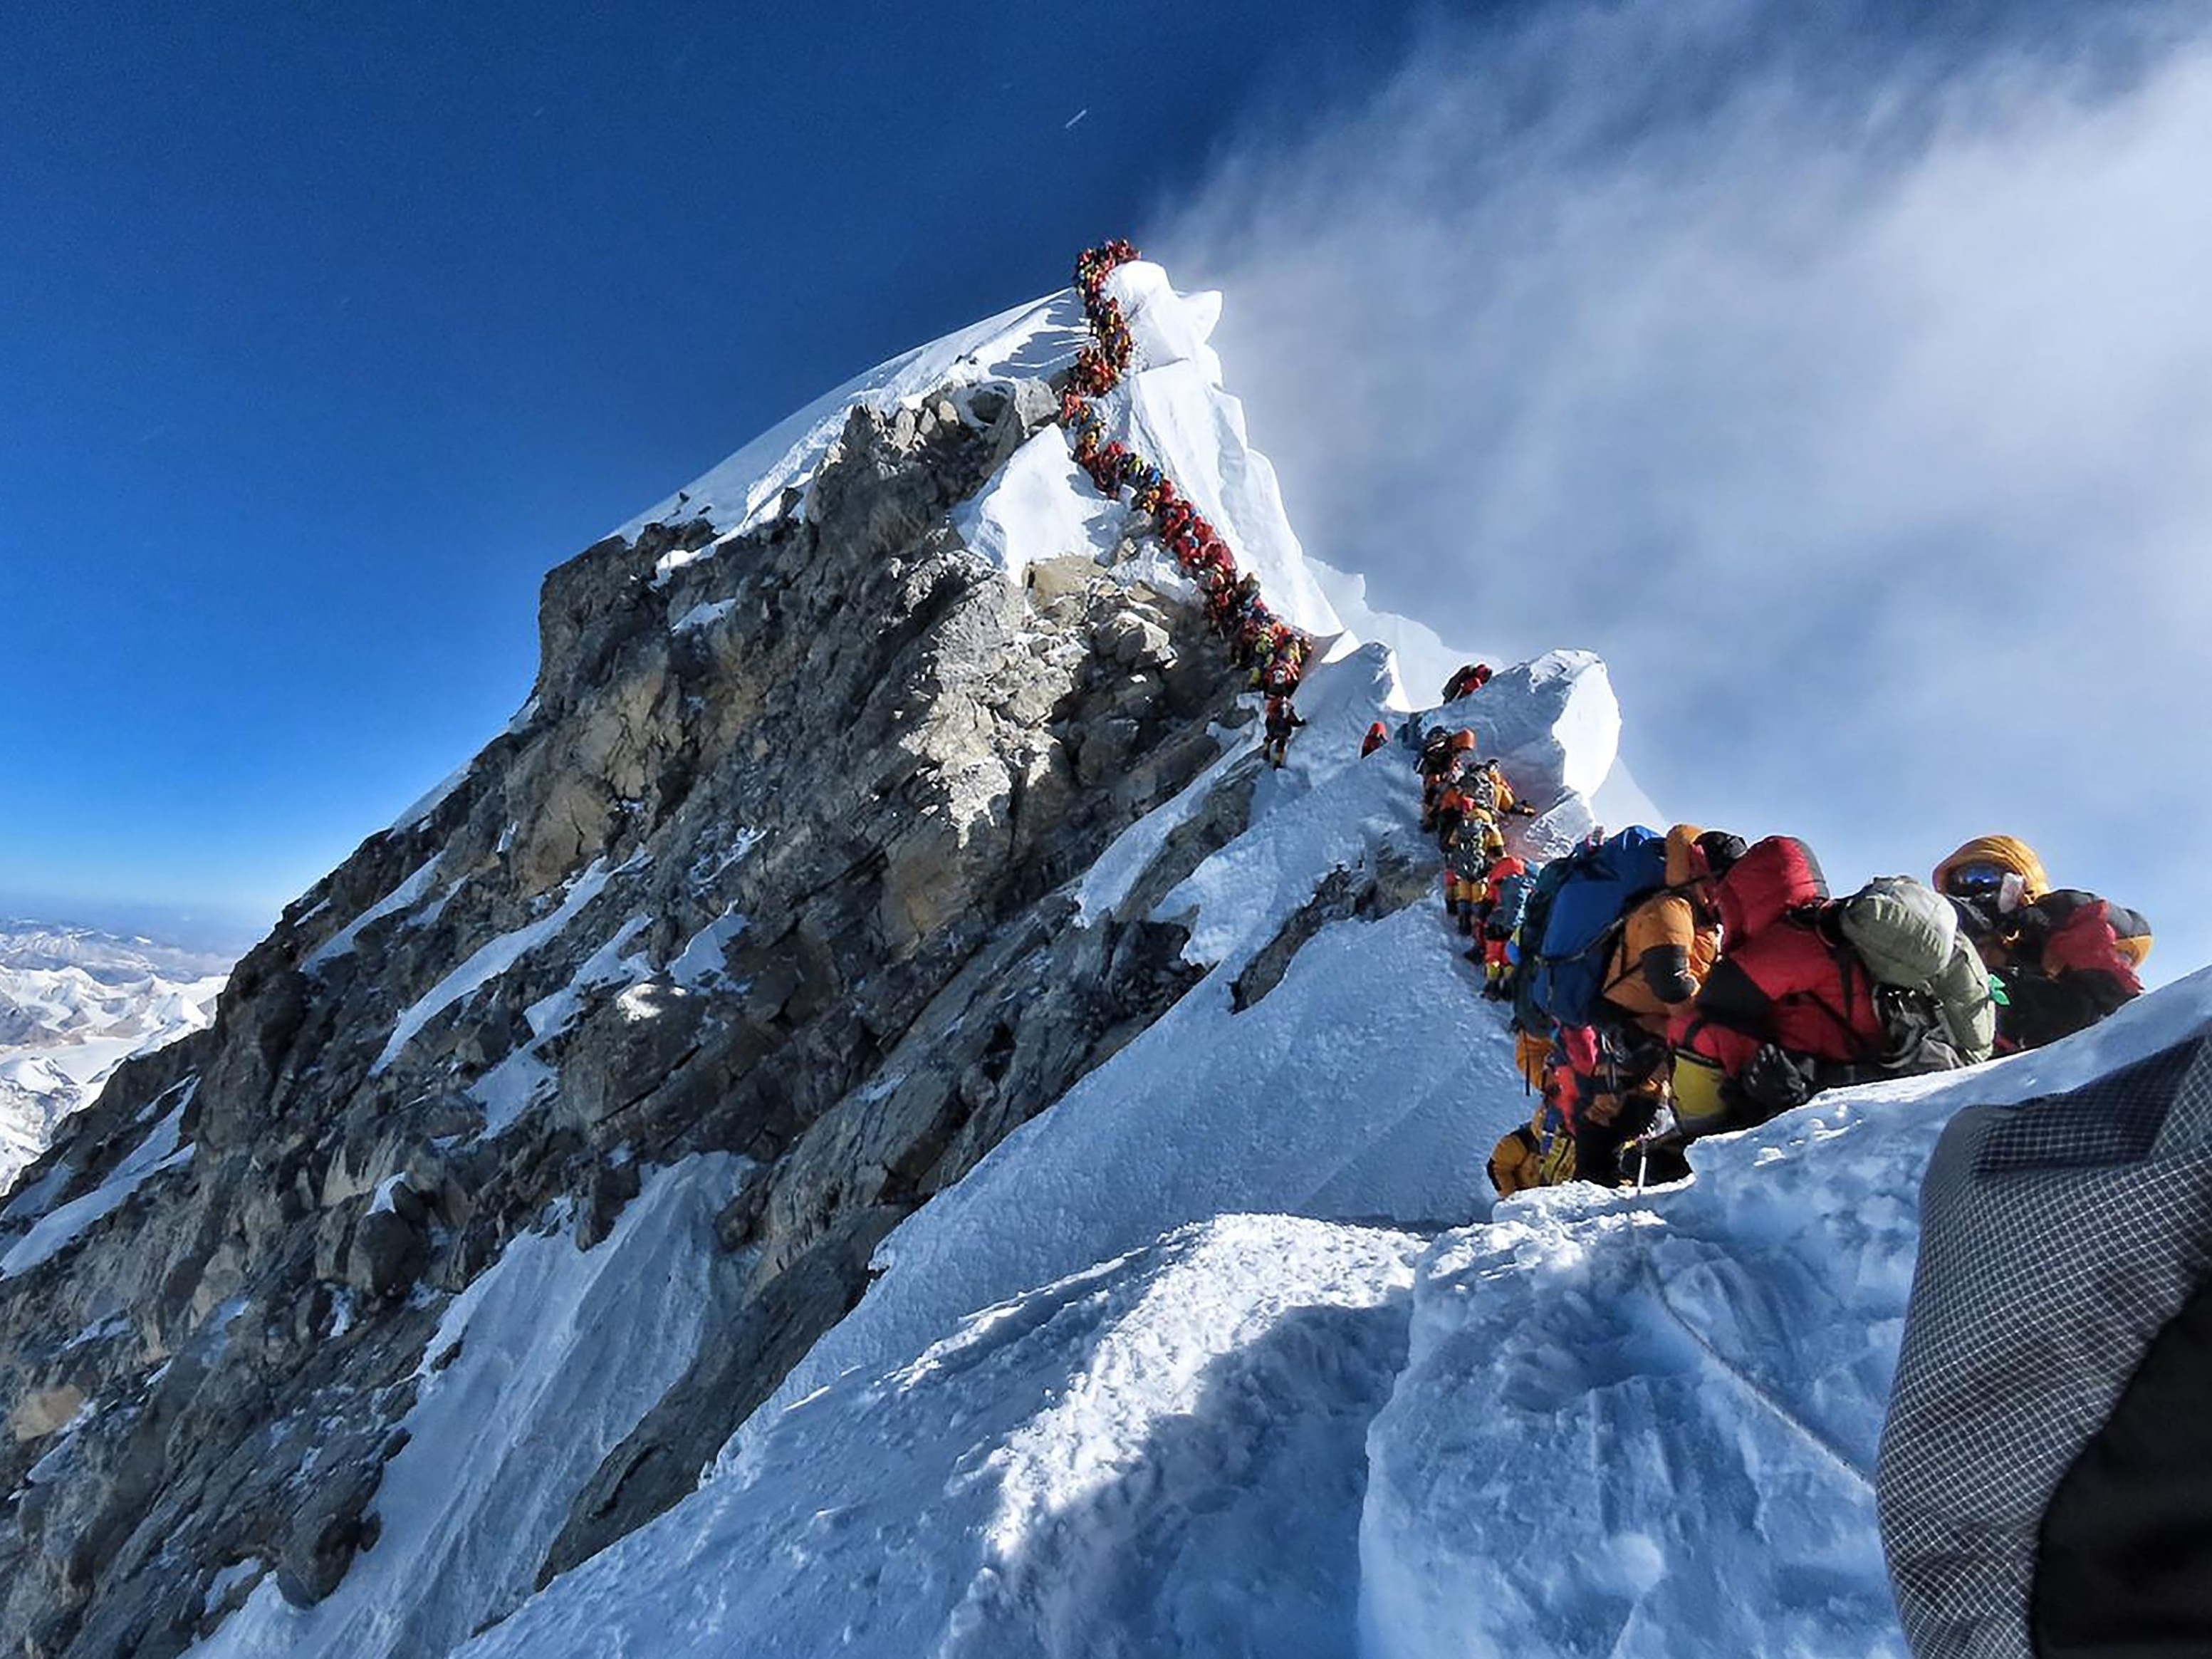 Escalada no Everest tem congestionamento e morte de cinco alpinistas -  24/05/2019 - UOL Notícias